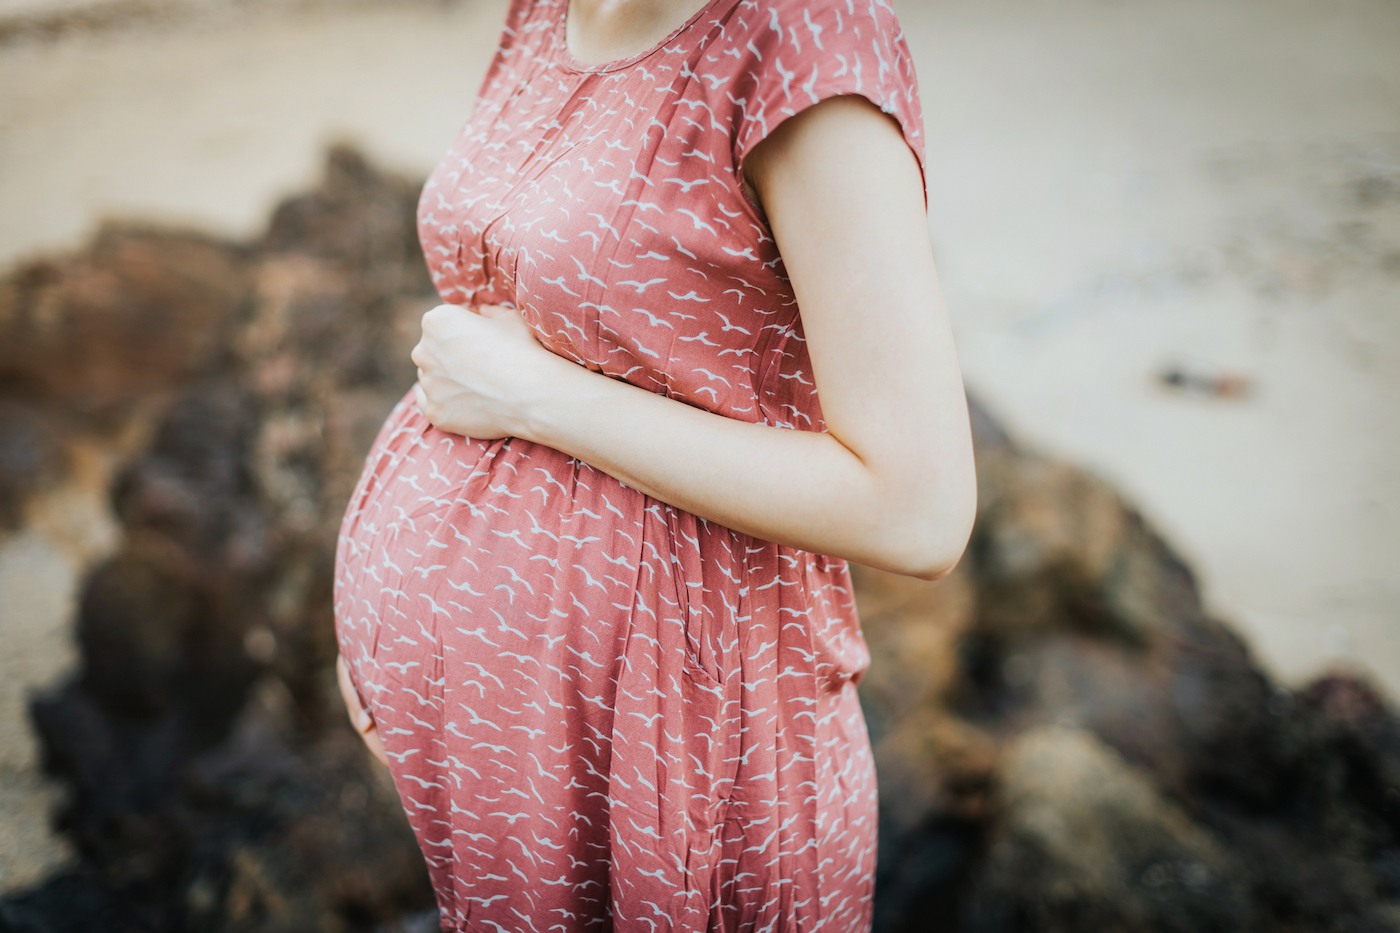 لماذا يحدث الإجهاض التلقائي حقائق ومفاهيم خاطئة - أهم أسباب خسارة الحمل في المملكة المتحدة وأقلها وضوحًا - الاستهلاك المفرط للكافيين أو الكحول